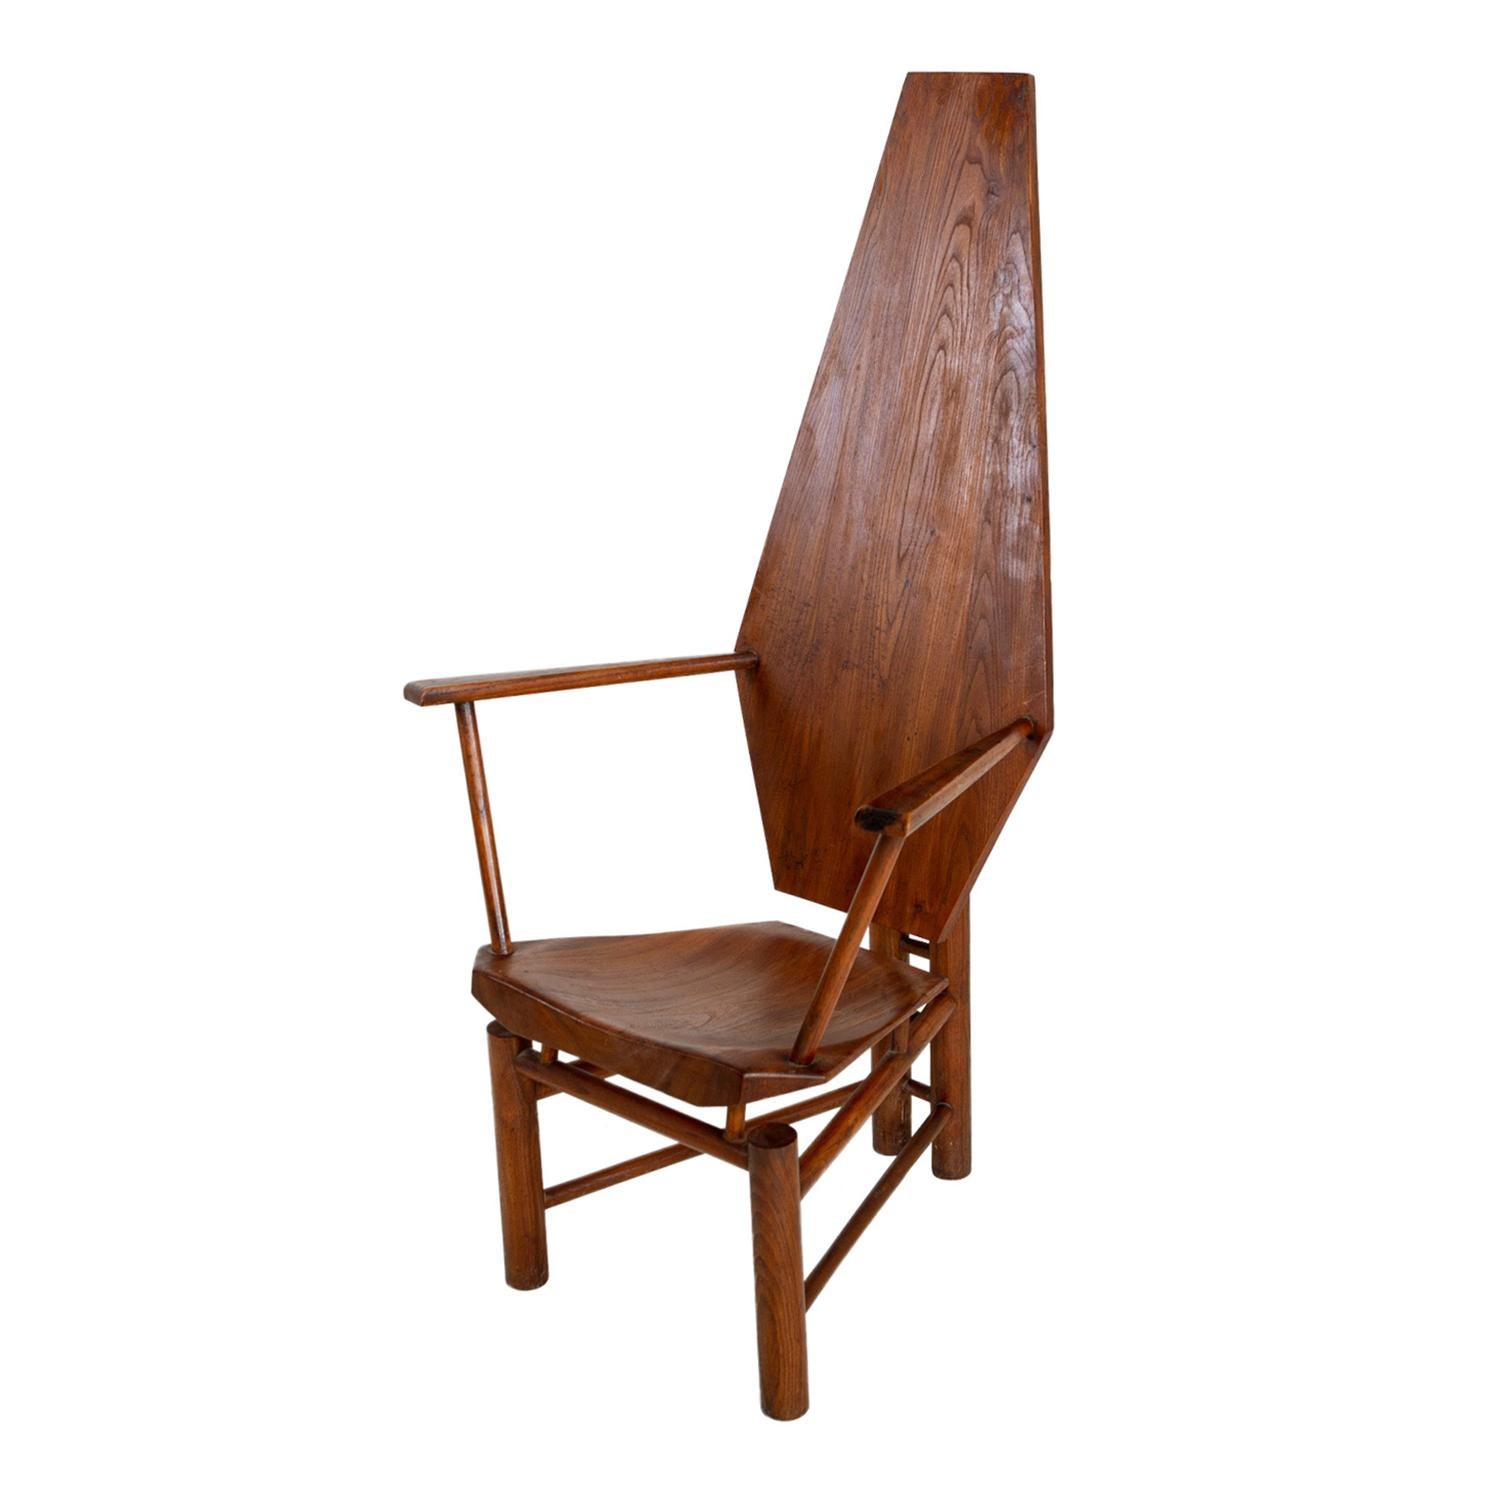 Ein einzelner italienischer skulpturaler Stuhl aus der Mitte des Jahrhunderts, handgefertigt aus poliertem Nussbaum, in gutem Zustand. Der seitliche Endsessel wird durch eine sechseckige Rückenlehne und ein Gestell aus zylindrischen Holzstreben